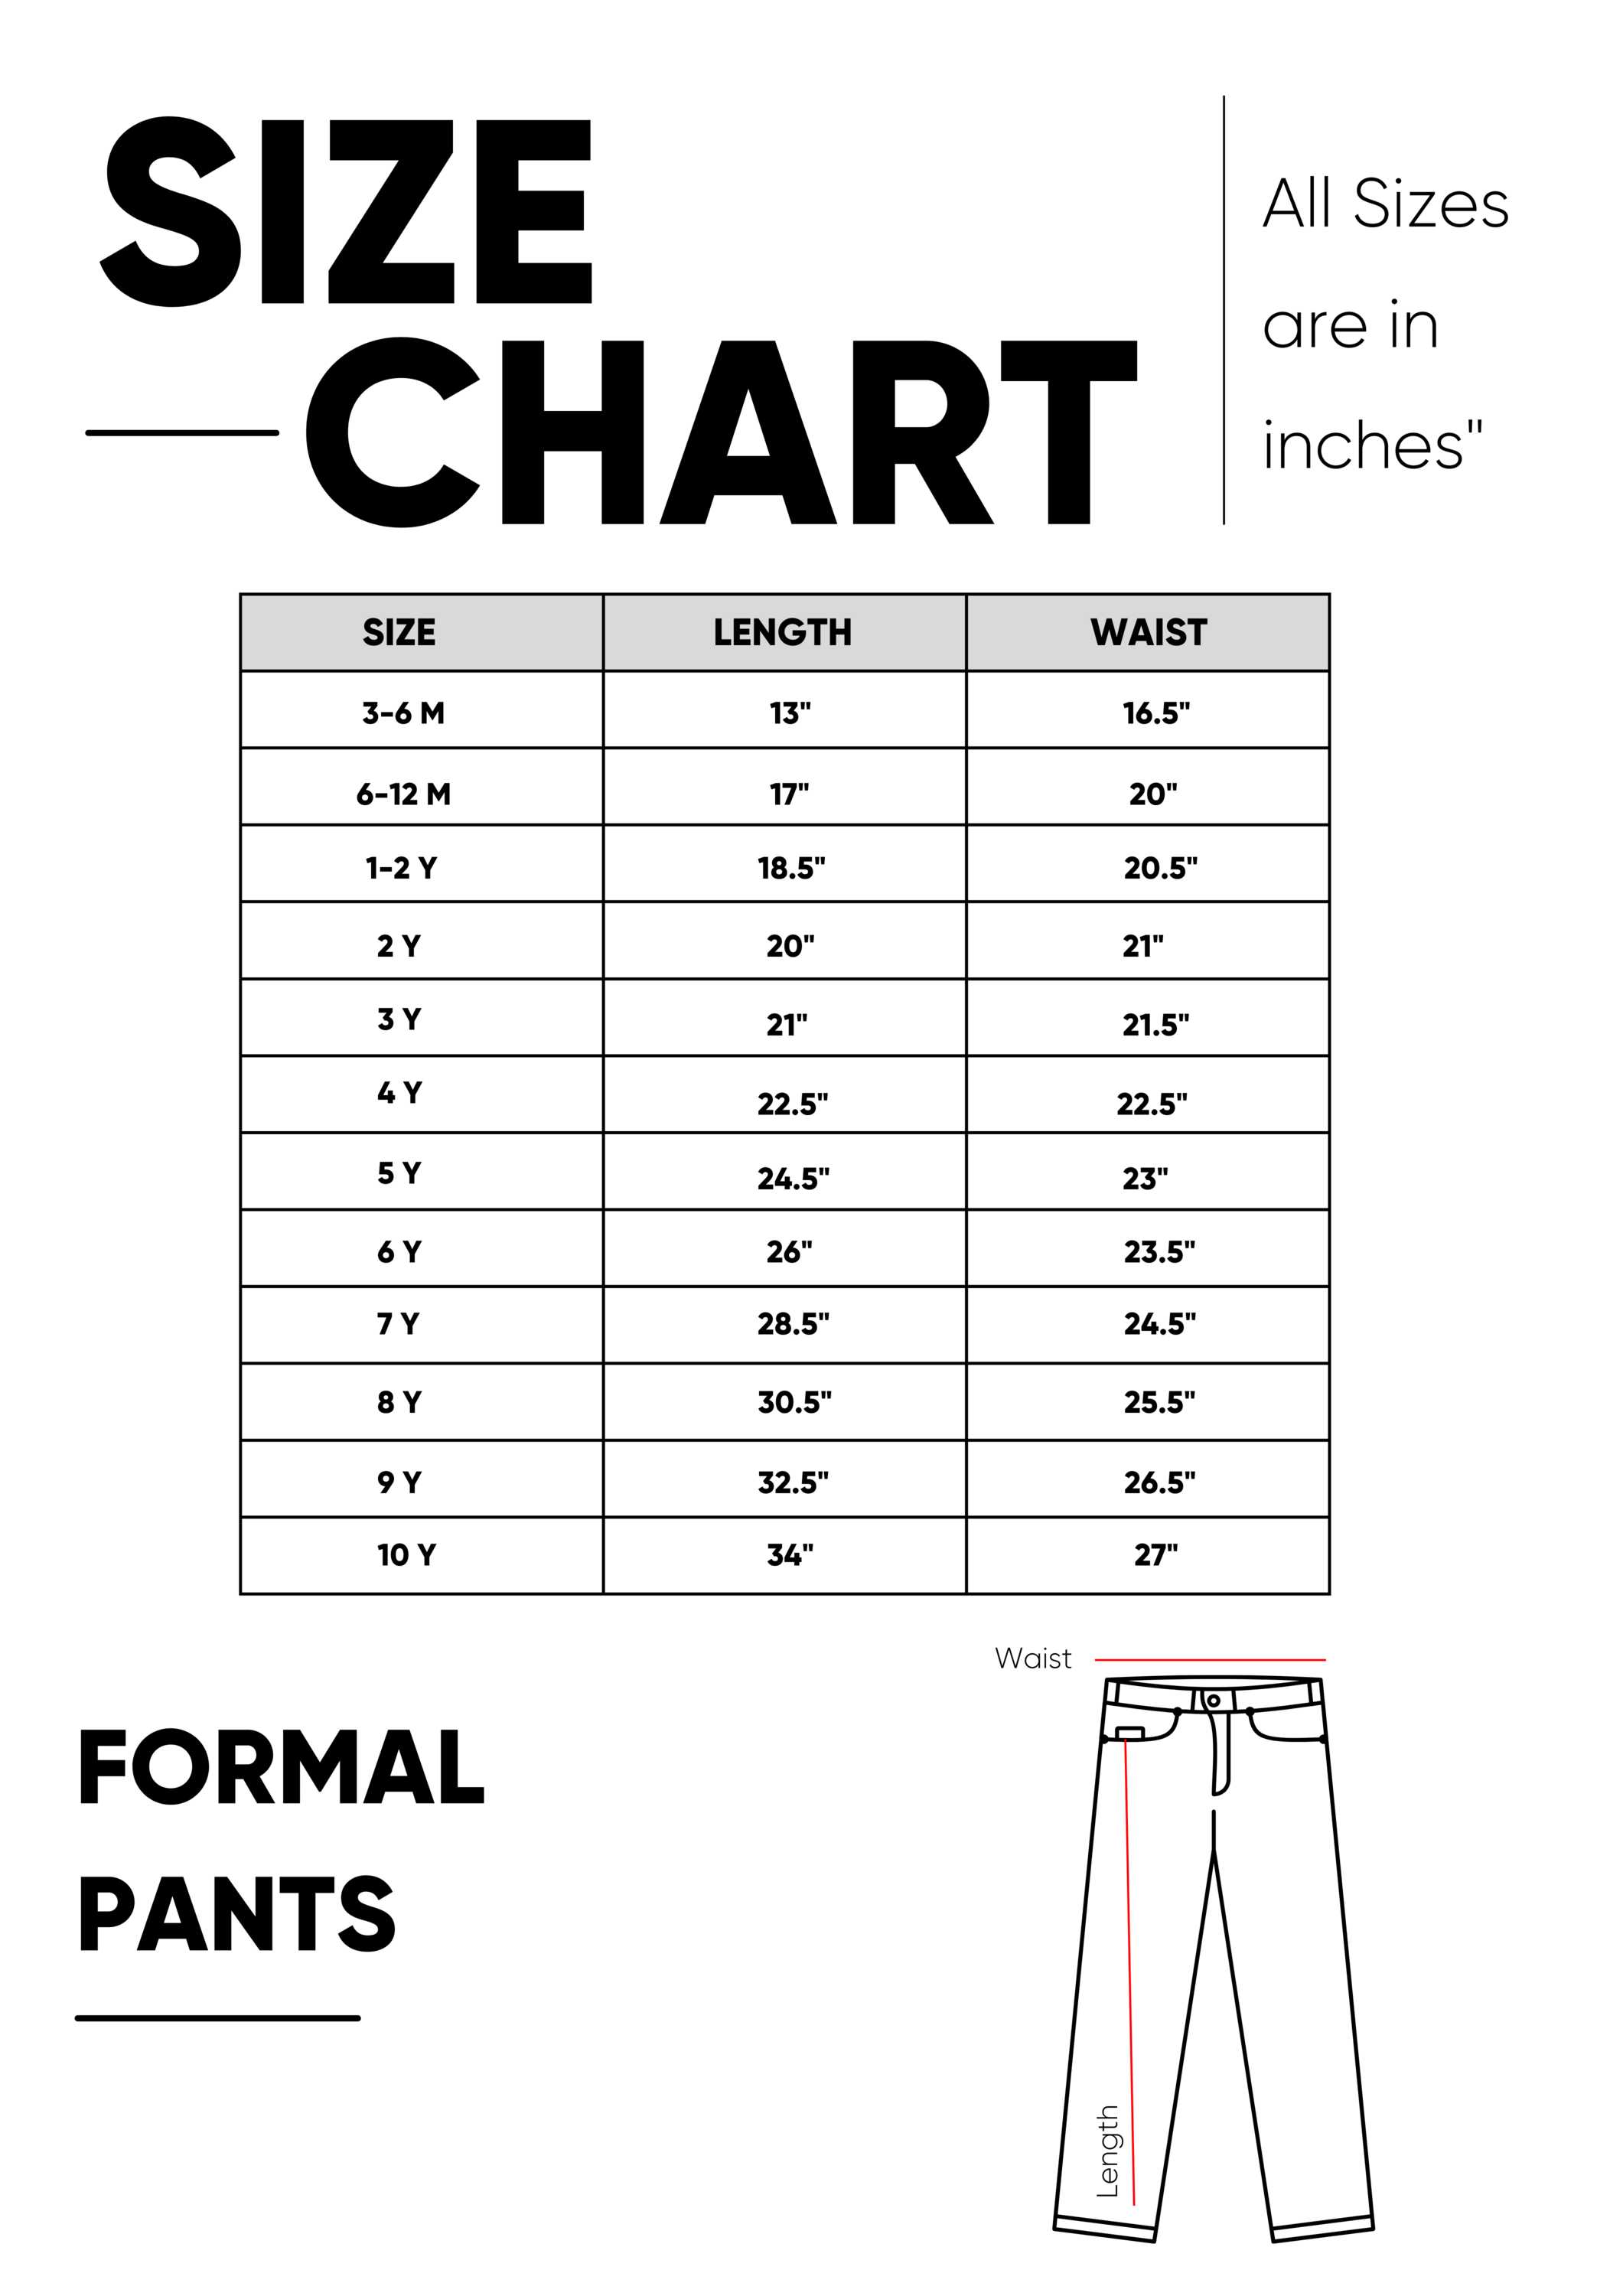 BLACK FORMAL PANTS SIZE CHART